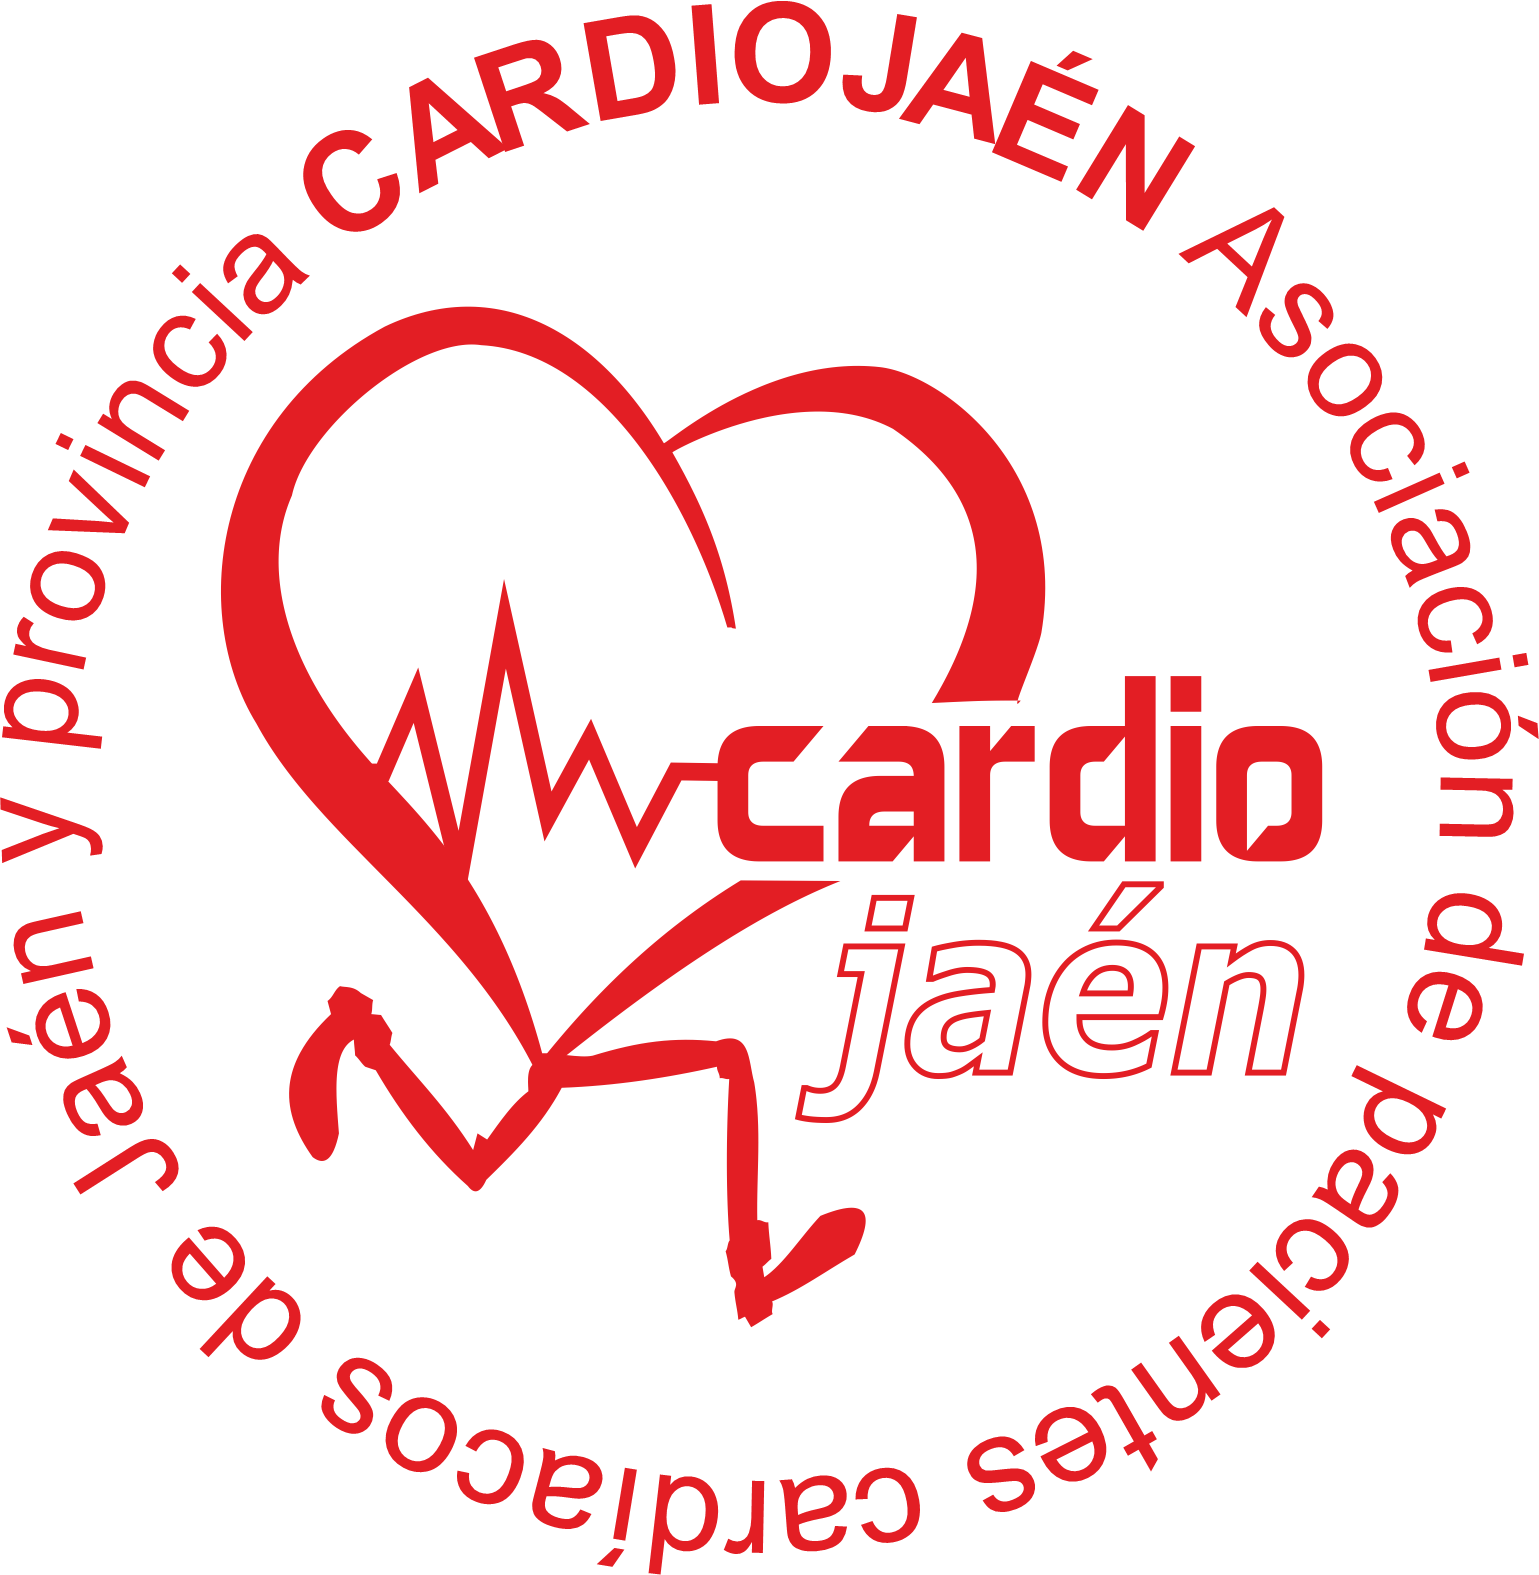 Asociación de Pacientes Cardiacos de Jaén y Provincia (CARDIOJAÉN)